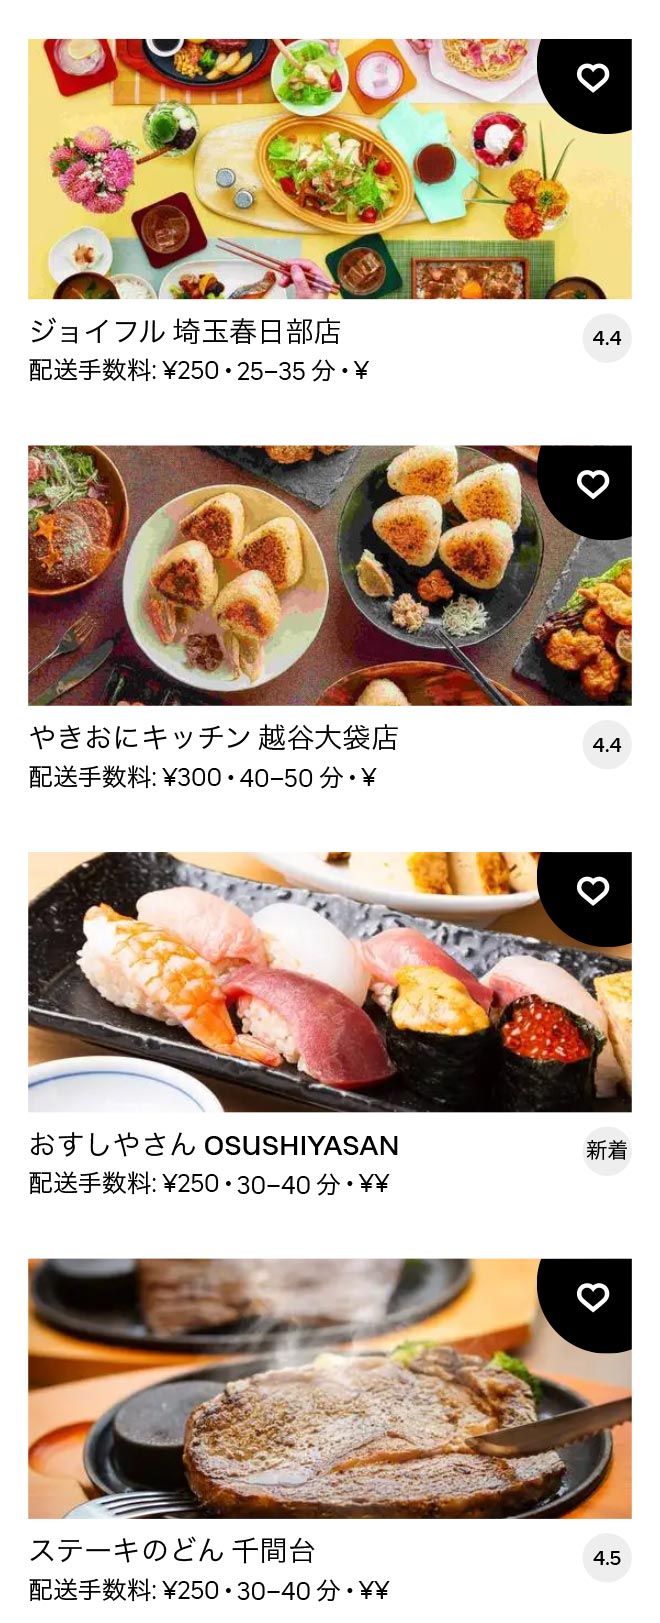 Takesato menu 2101 06